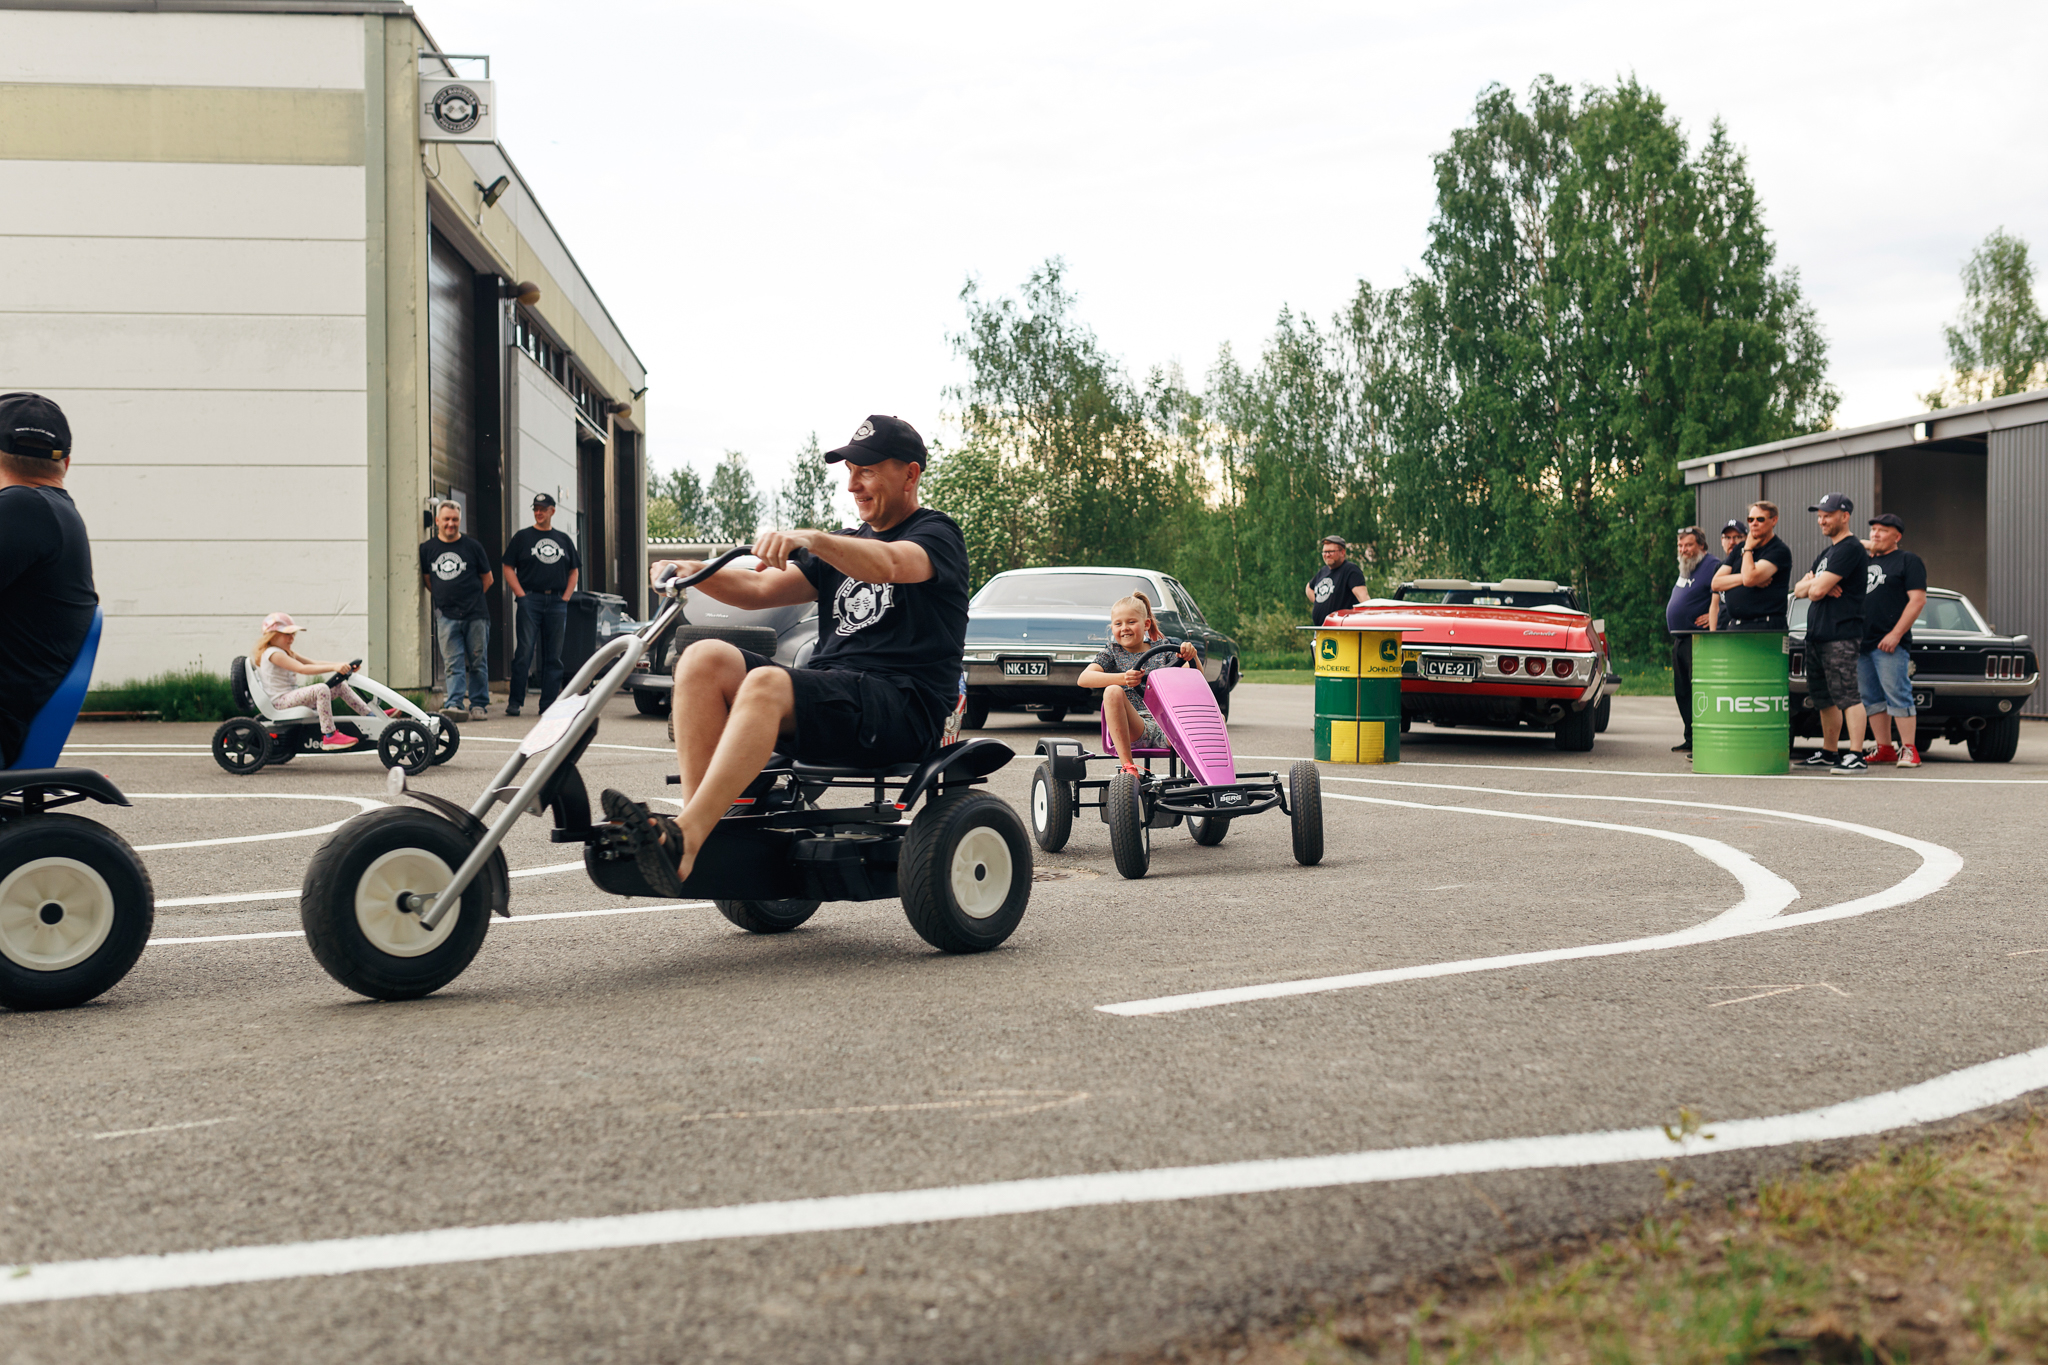 Liikennepuisto autohallin vieressä. Mika Rieppo ja Olli-Peka Karttunen ajavat kilpaa polkuautoilla kahden pienen tytön kanssa, muut yhdistyksen jäsenet seuraavat sivusta.